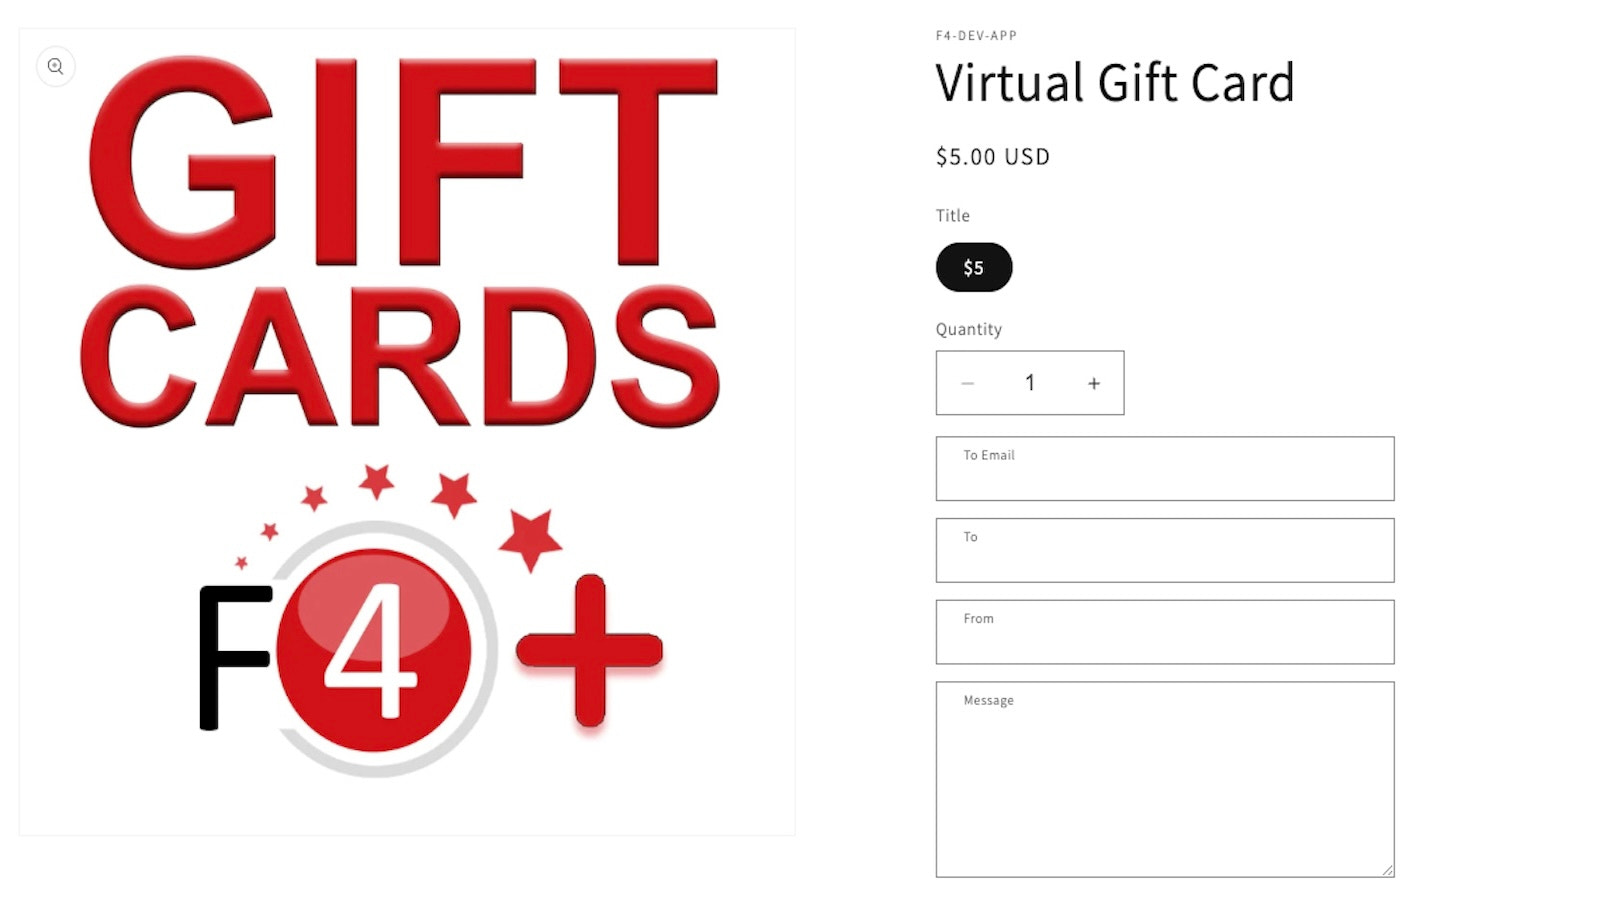 Sælg virtuelt gavekort online! 